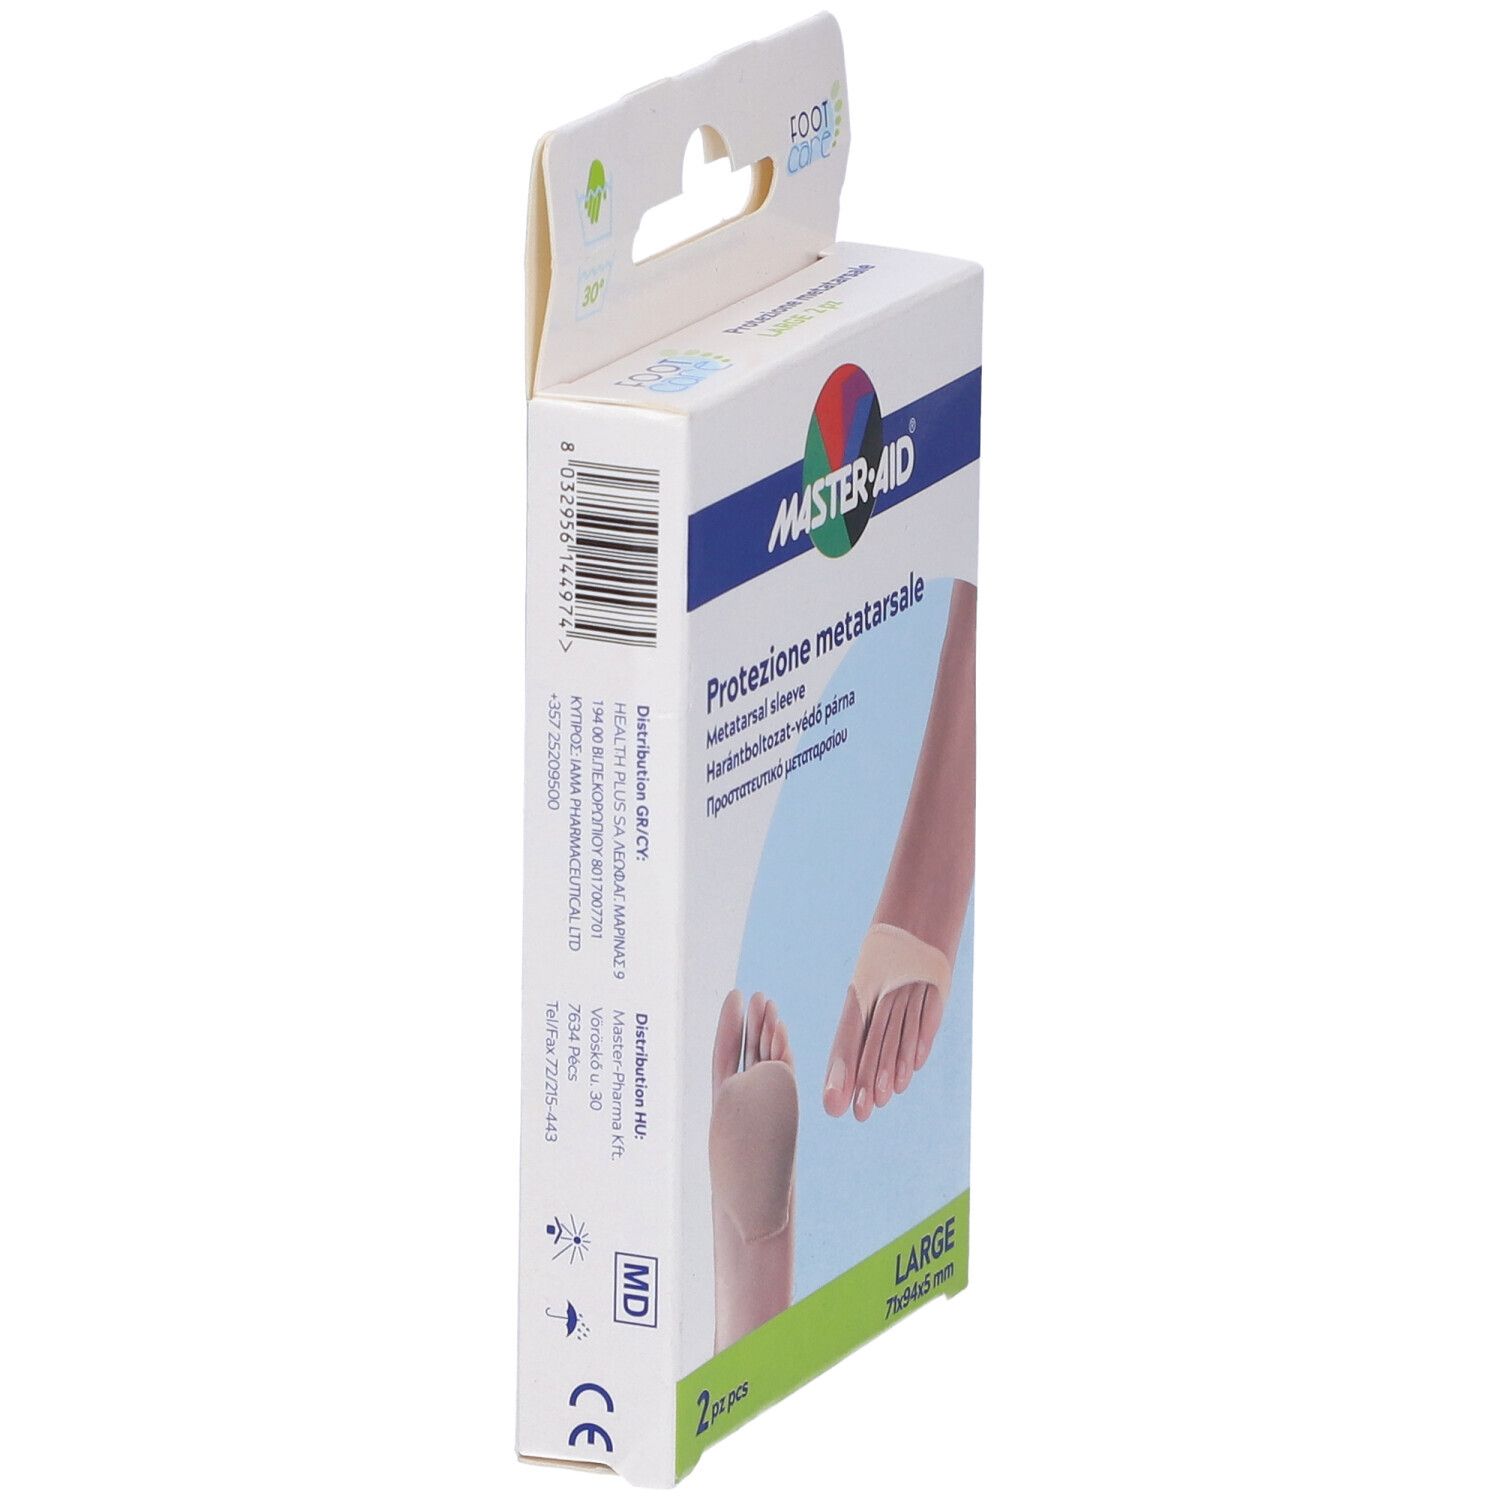 Protezione In Gel E Tessuto Master-Aid Footcare Per Metatarso Large 2 Pezzi G3